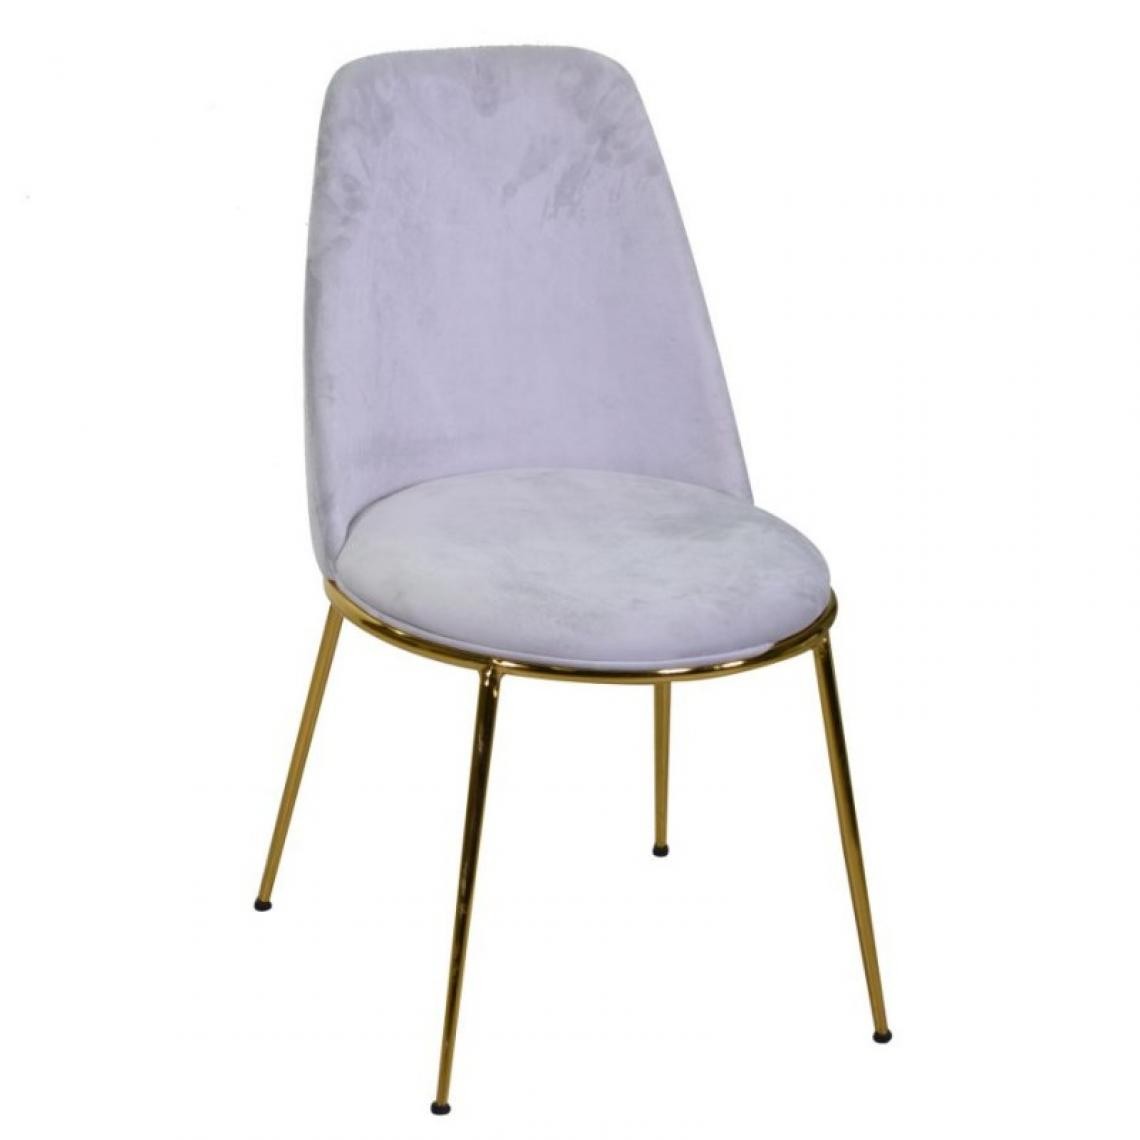 Webmarketpoint - Chaise de salon design velours et métal doré gris rotterdam - Chaises